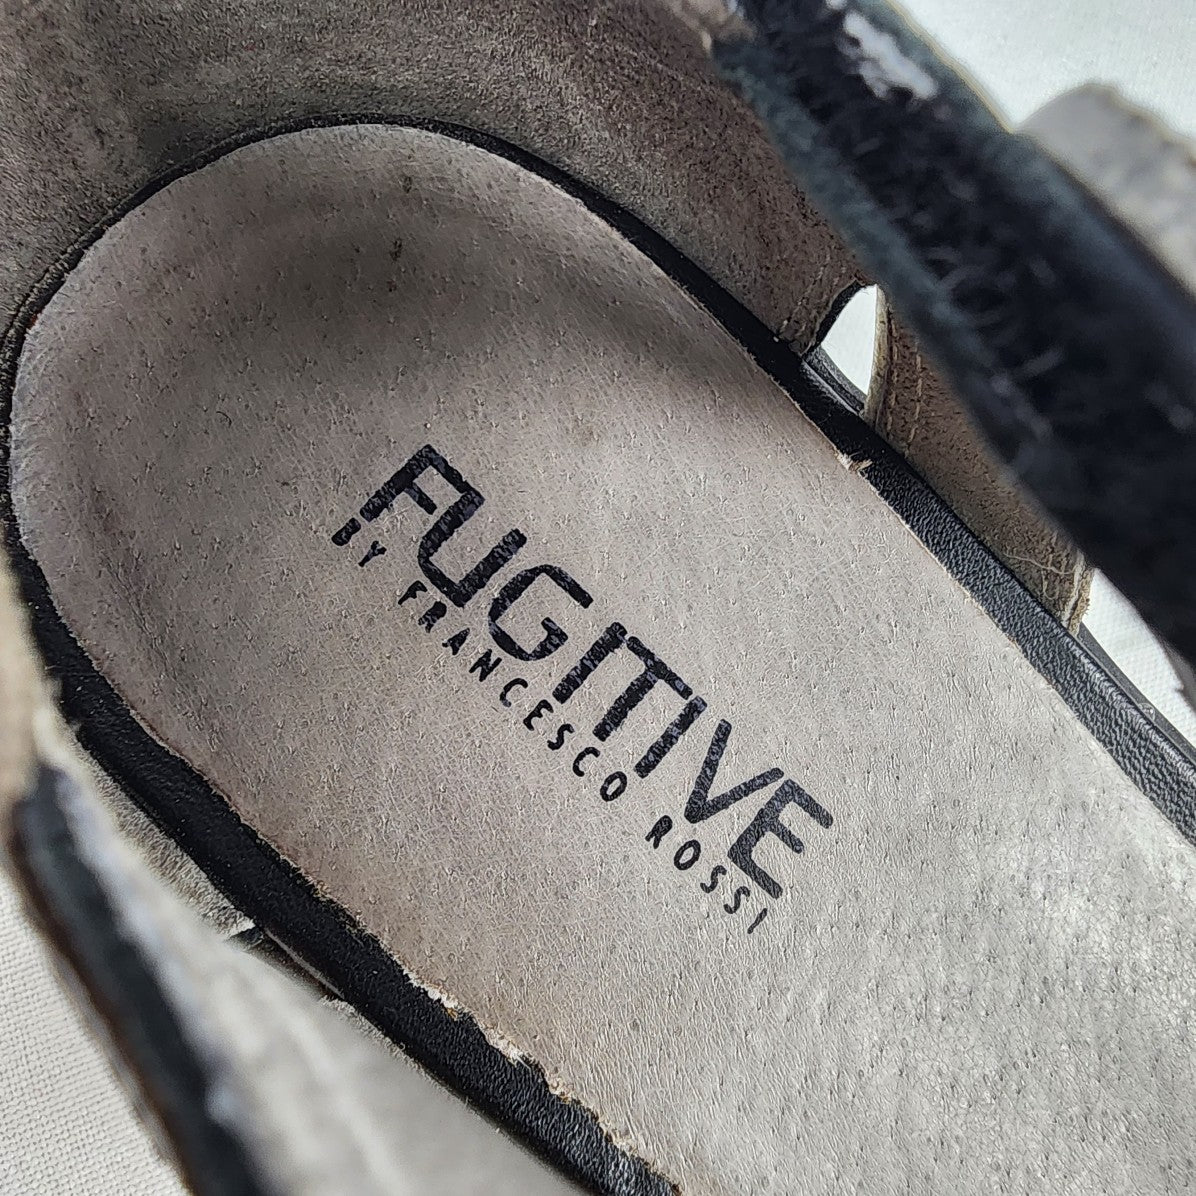 Fugitive Black Leather Mary Jane Shoes Size 9